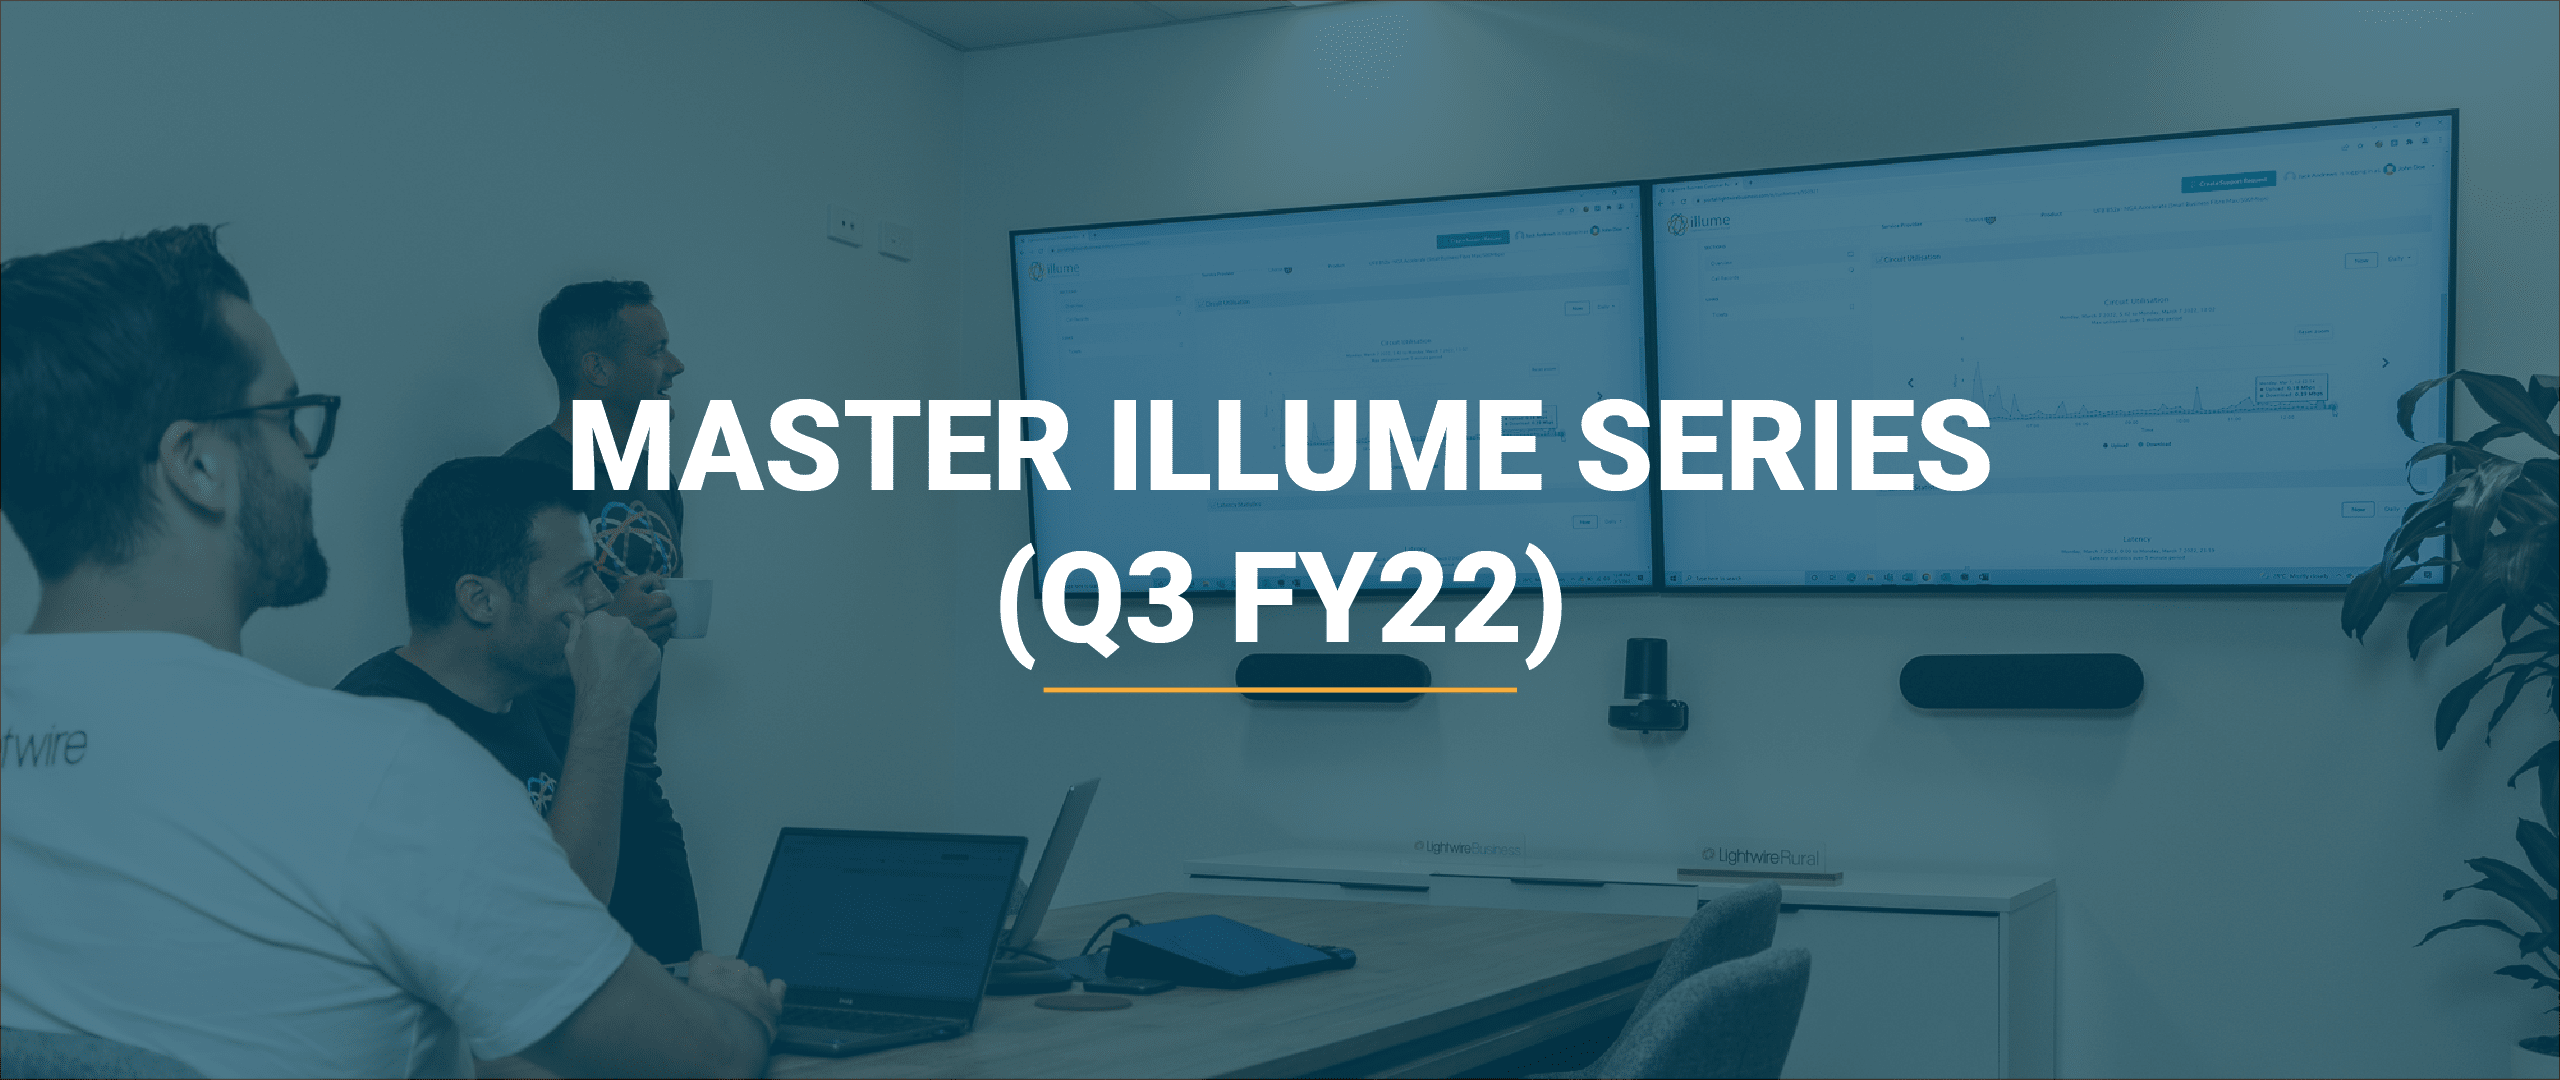 master illume series